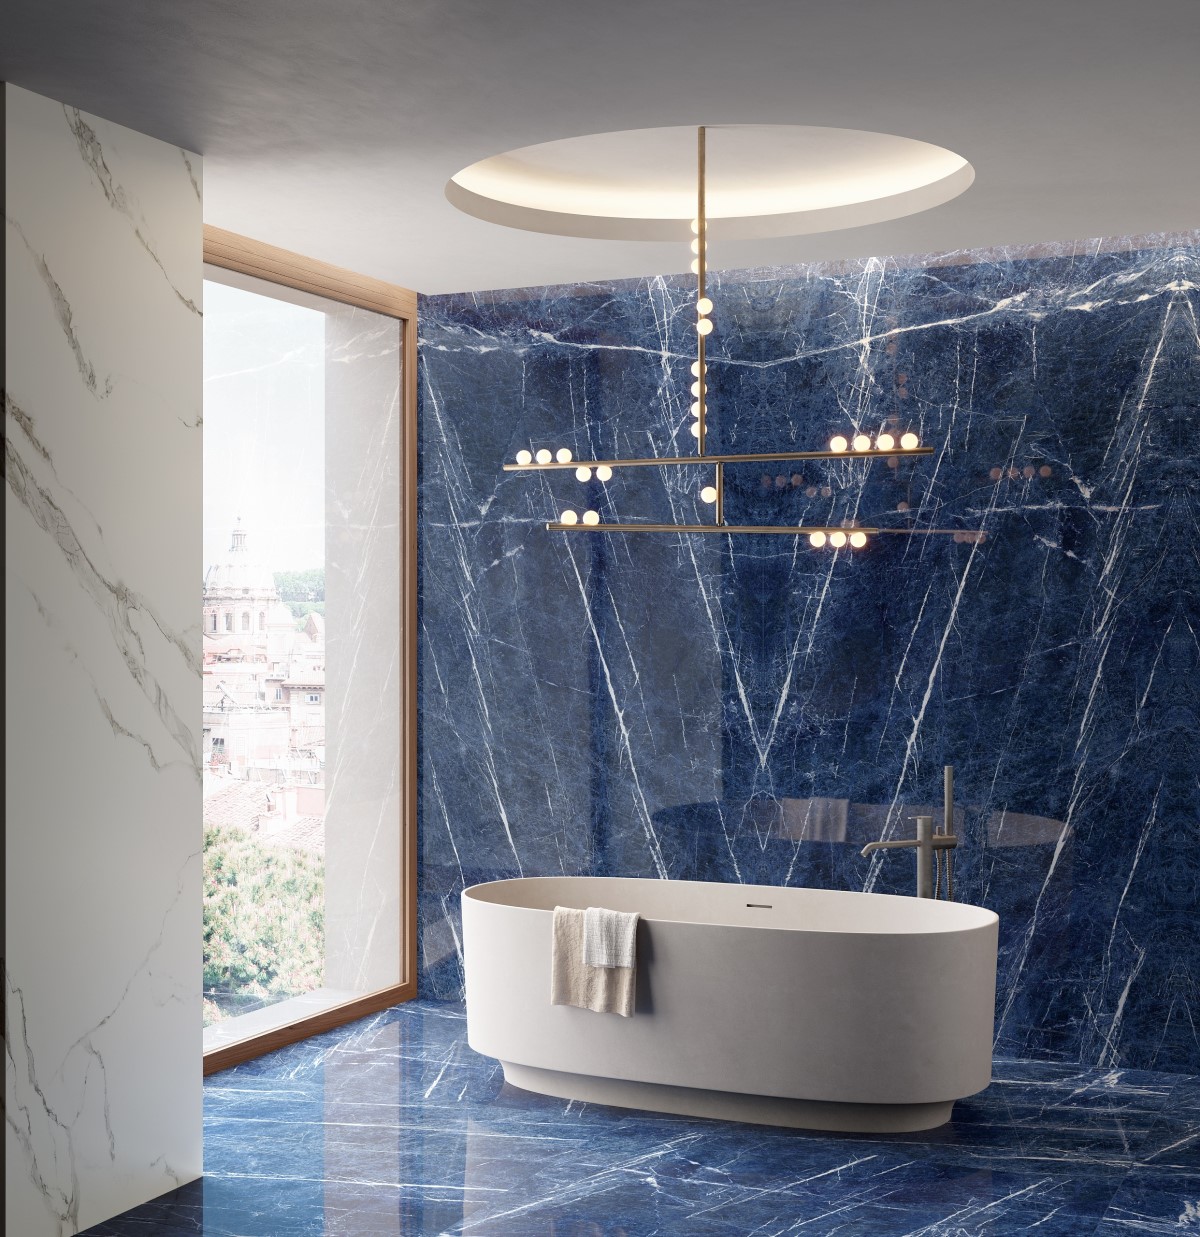 Gạch khổ lớn màu xanh dương với vân trắng là sự lựa chọn hoàn hảo để ốp lát nhà tắm cao cấp, tạo nên không gian tươi mát và sang trọng